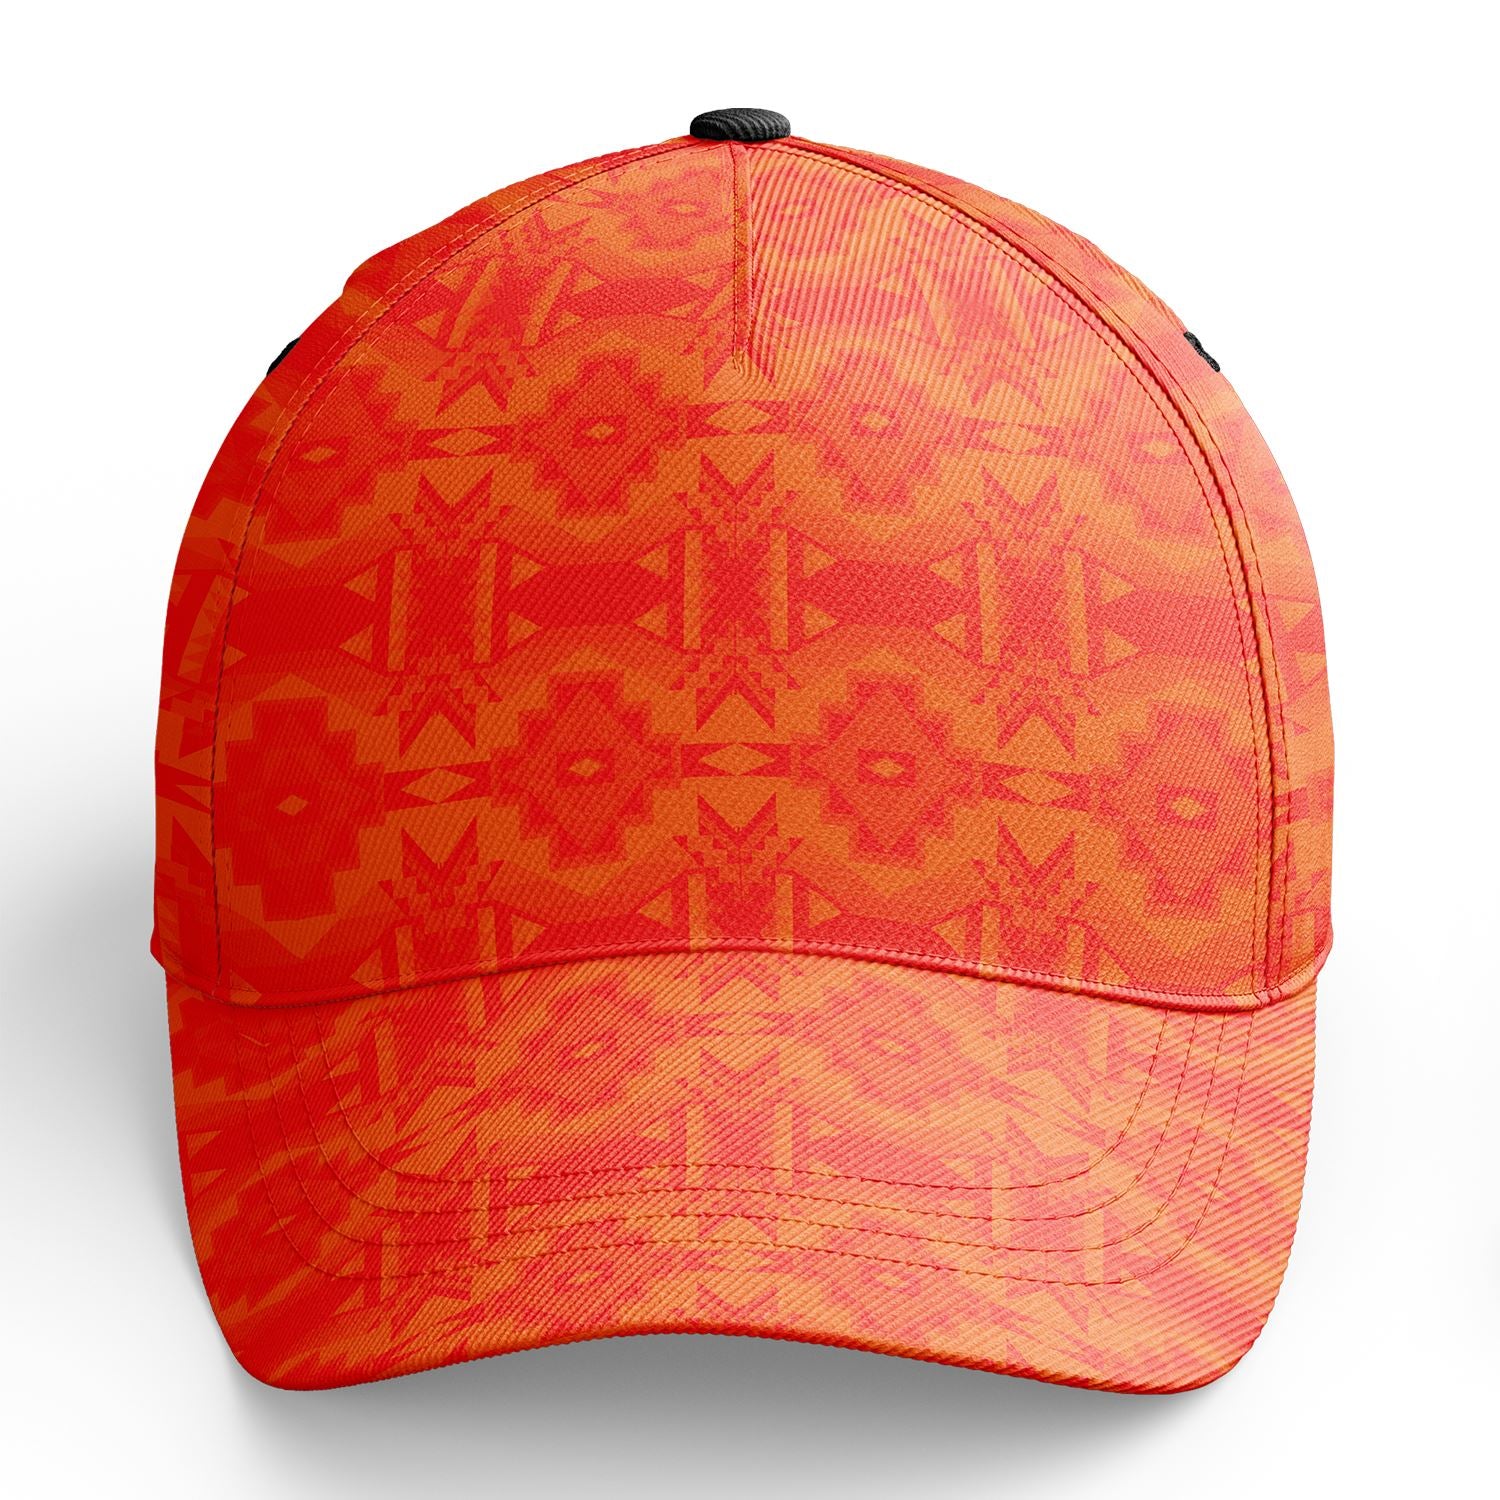 Fancy Orange Snapback Hat hat Herman 